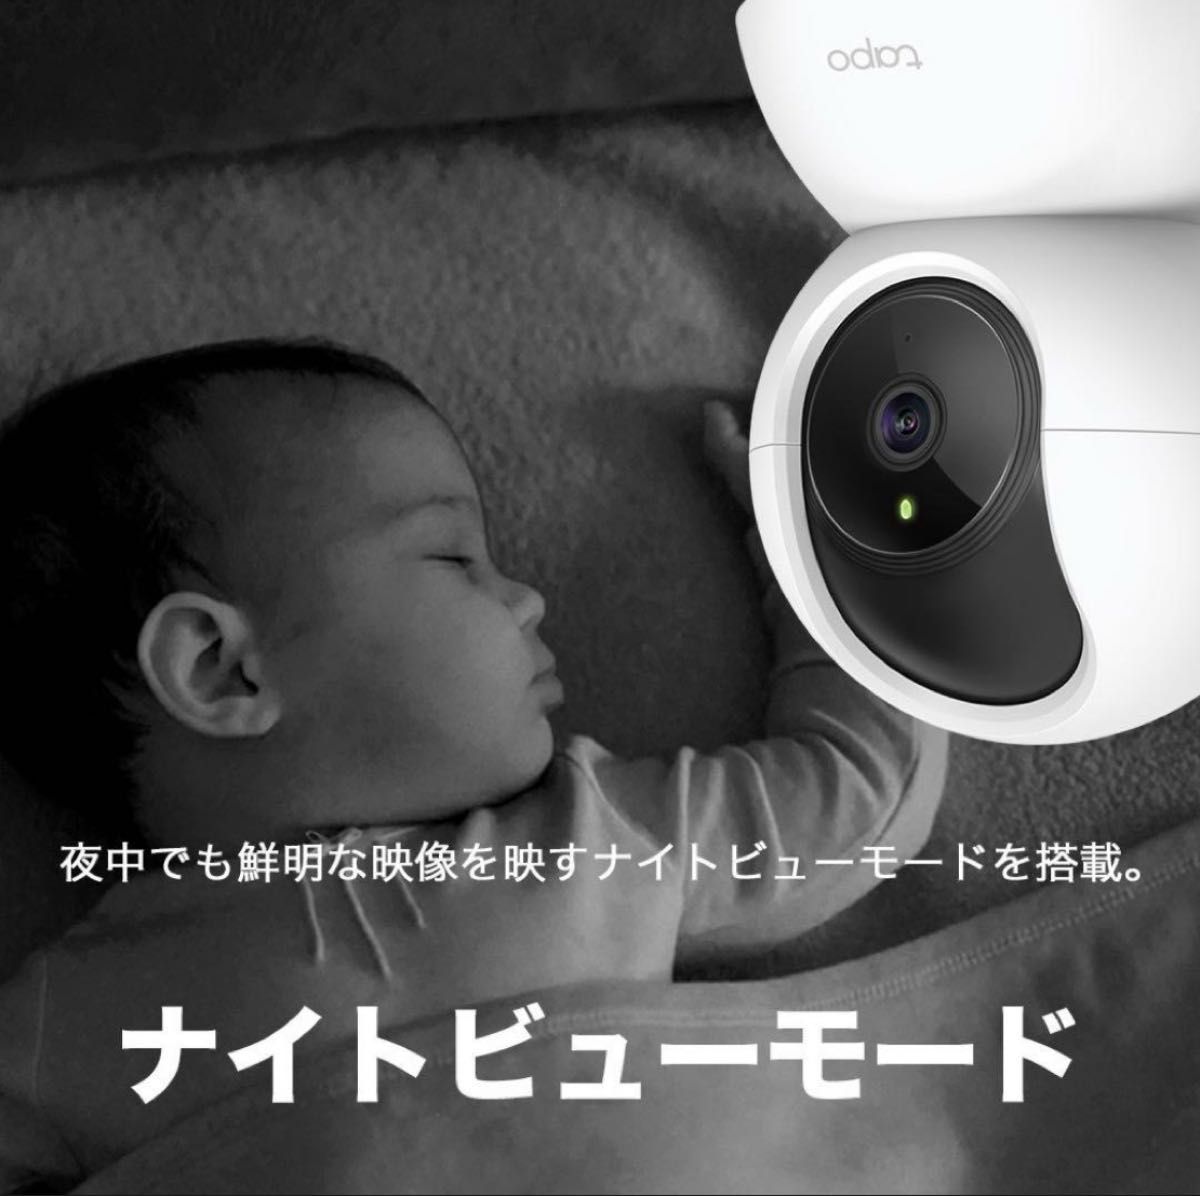 【新品未使用】Tapo C200 防犯カメラ ペットカメラ 見守りカメラ